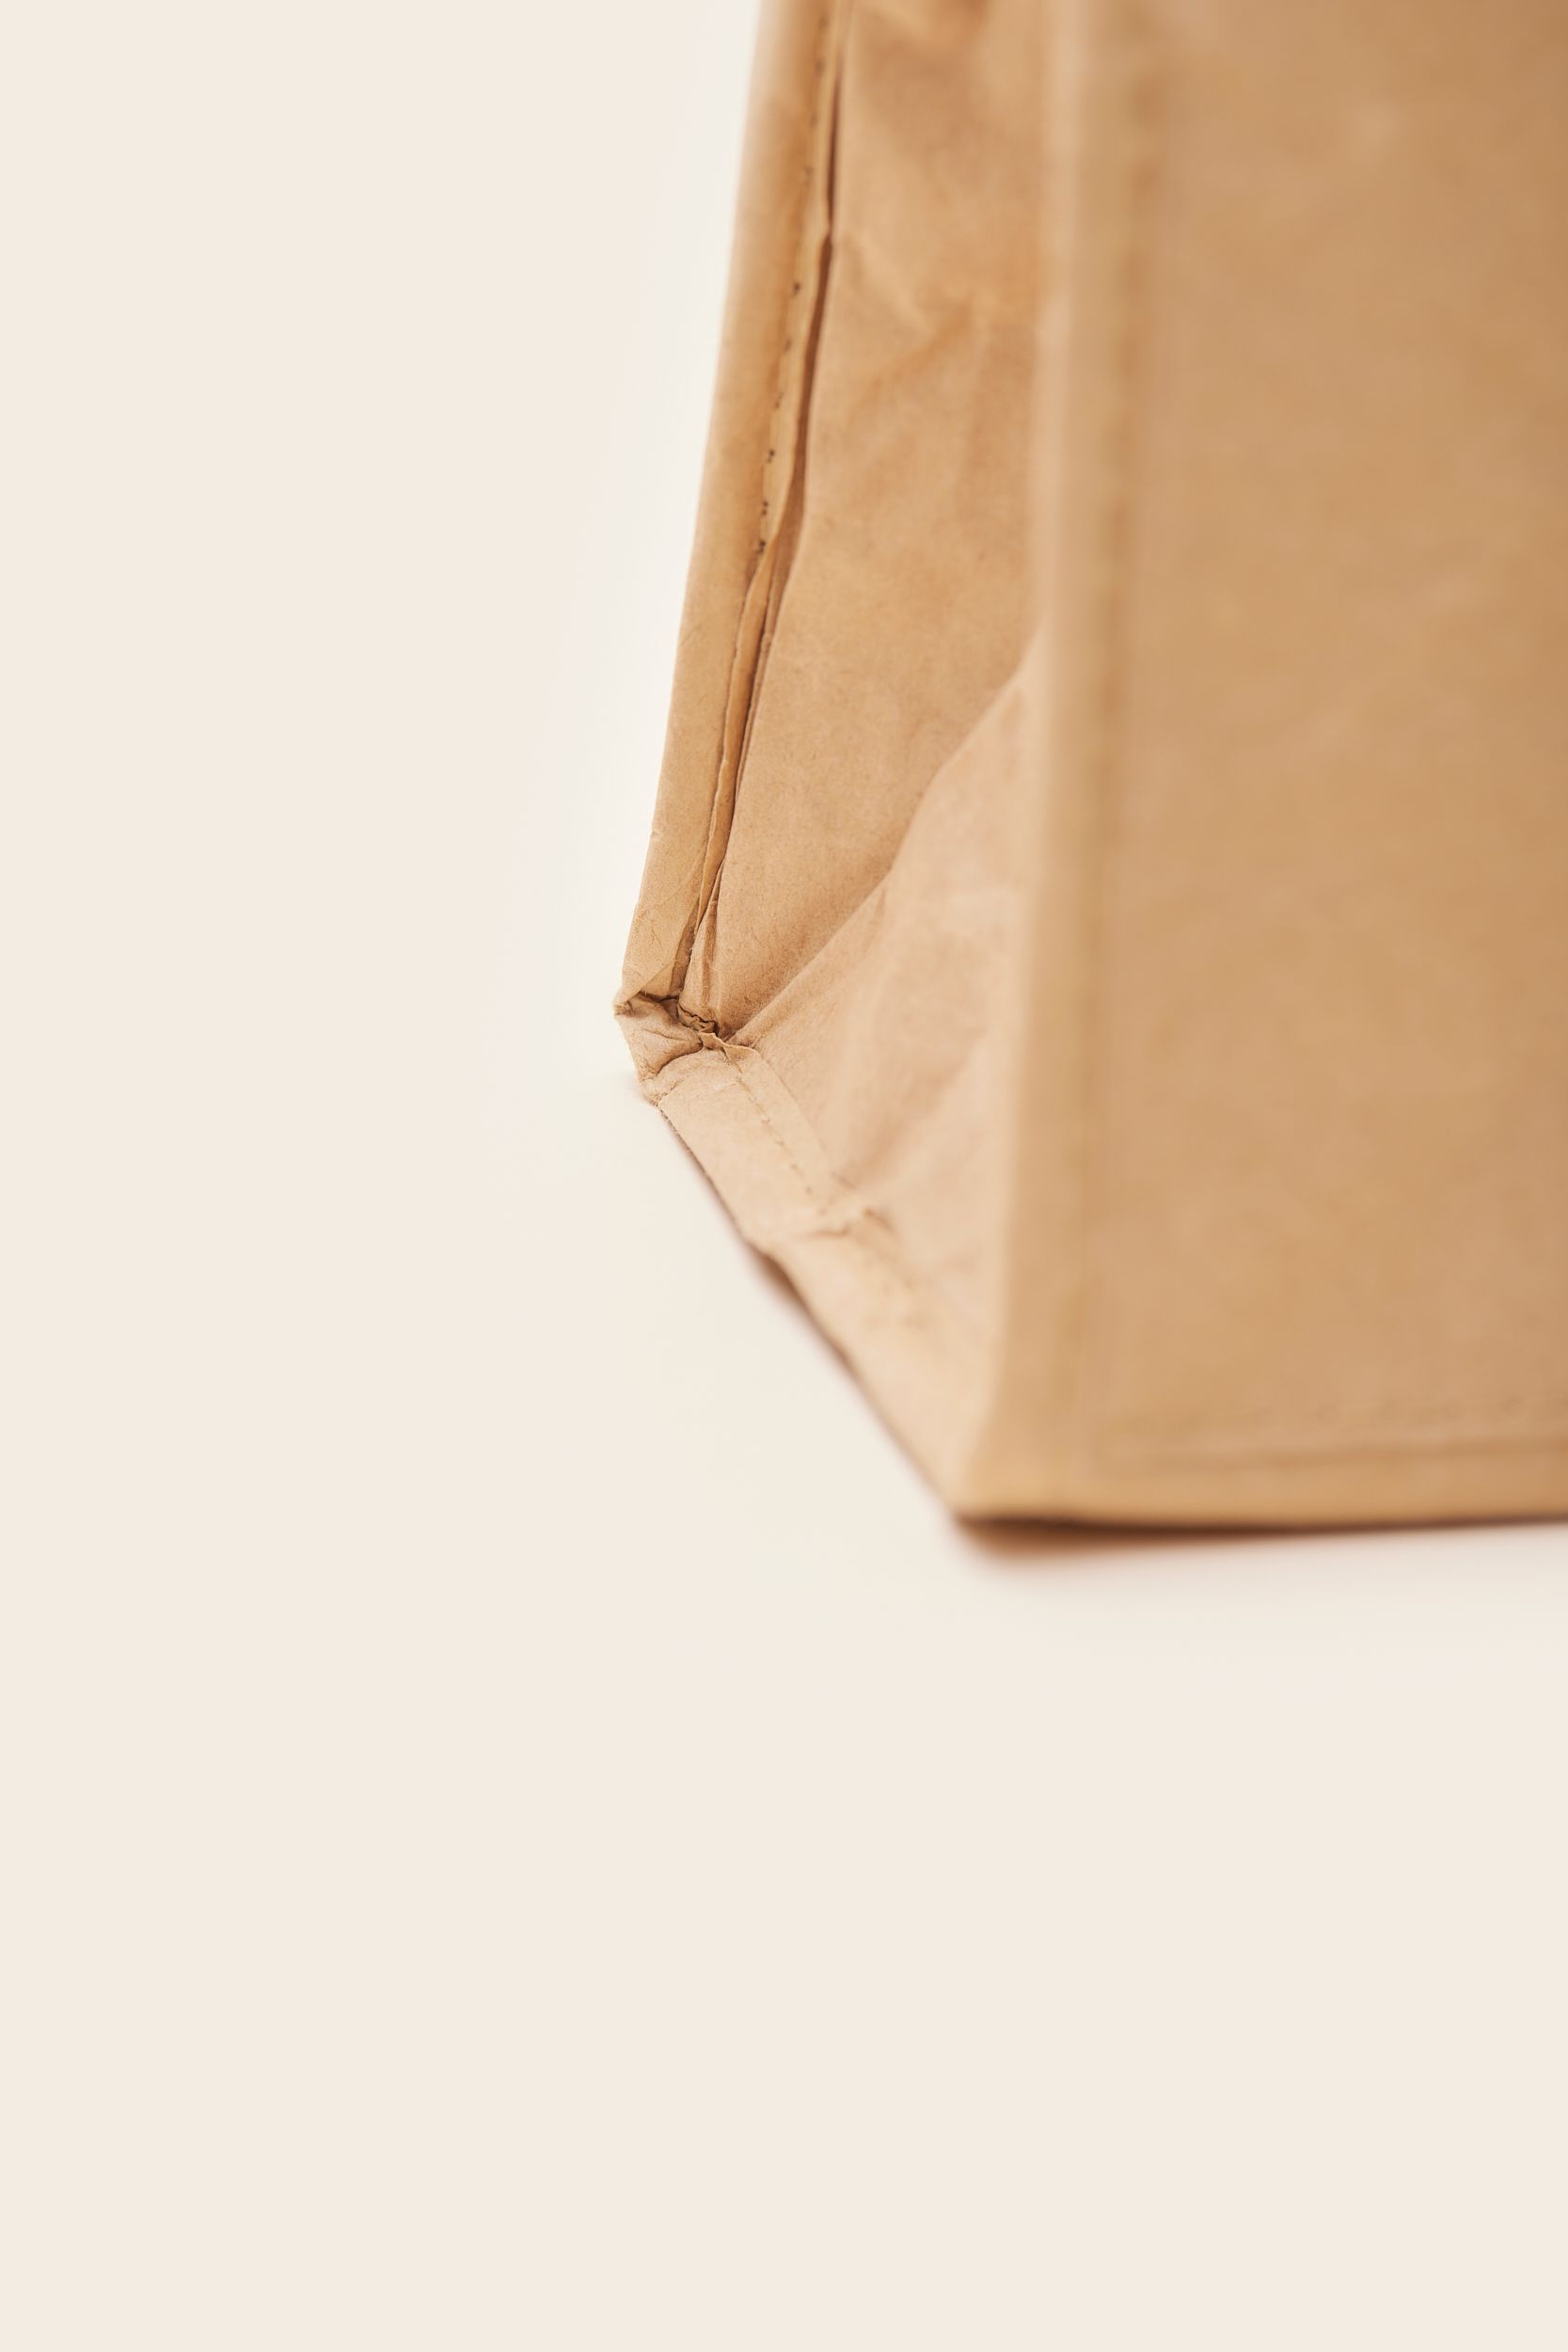 MERCHERY_Paper lunch bag_closeup.jpg